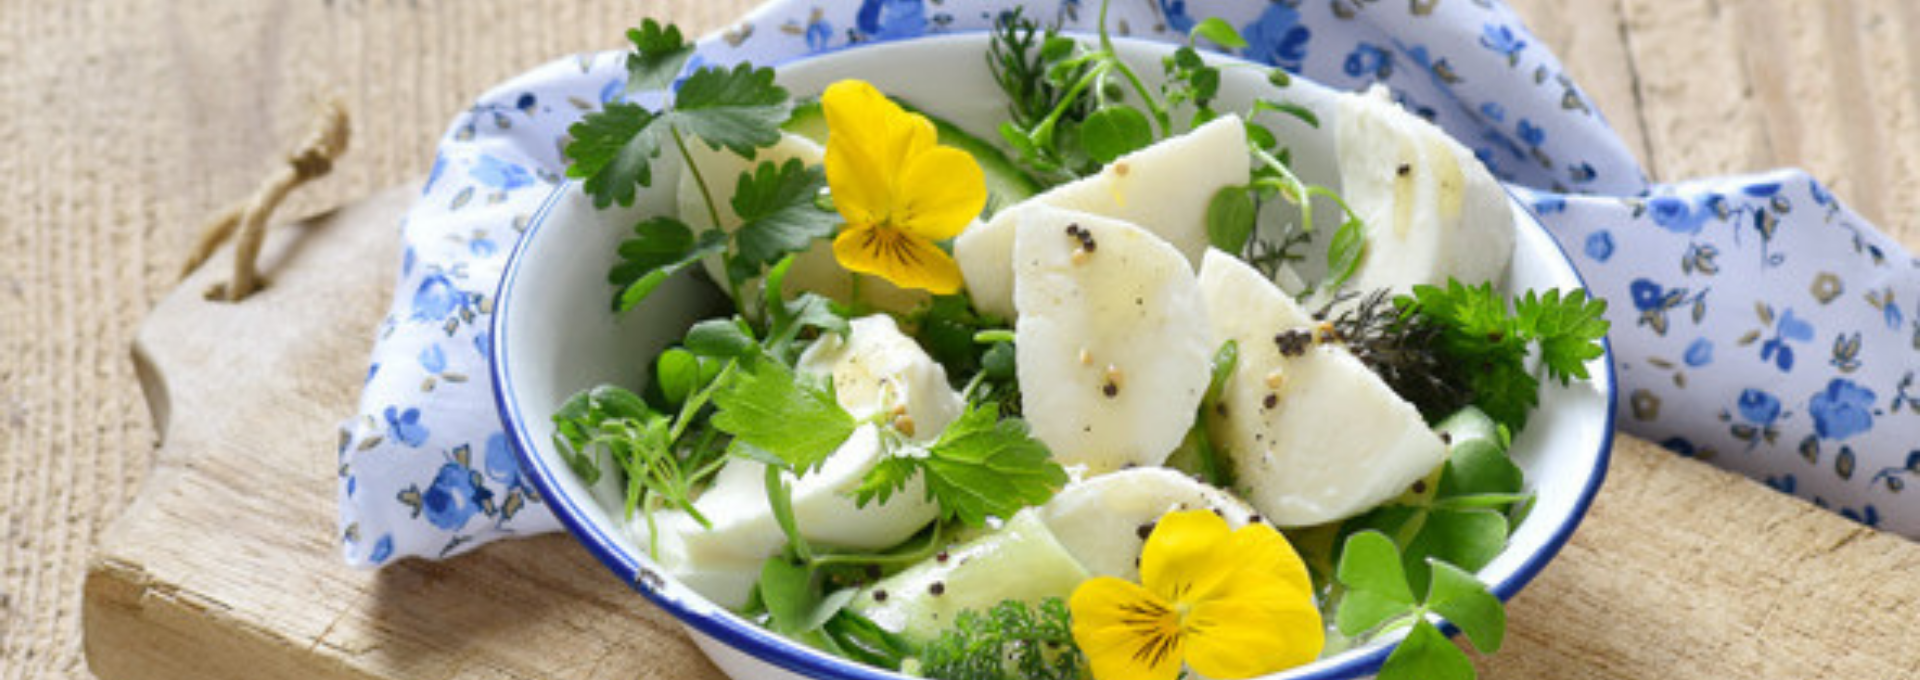 Wildkräuter-Salat mit Mozzarella